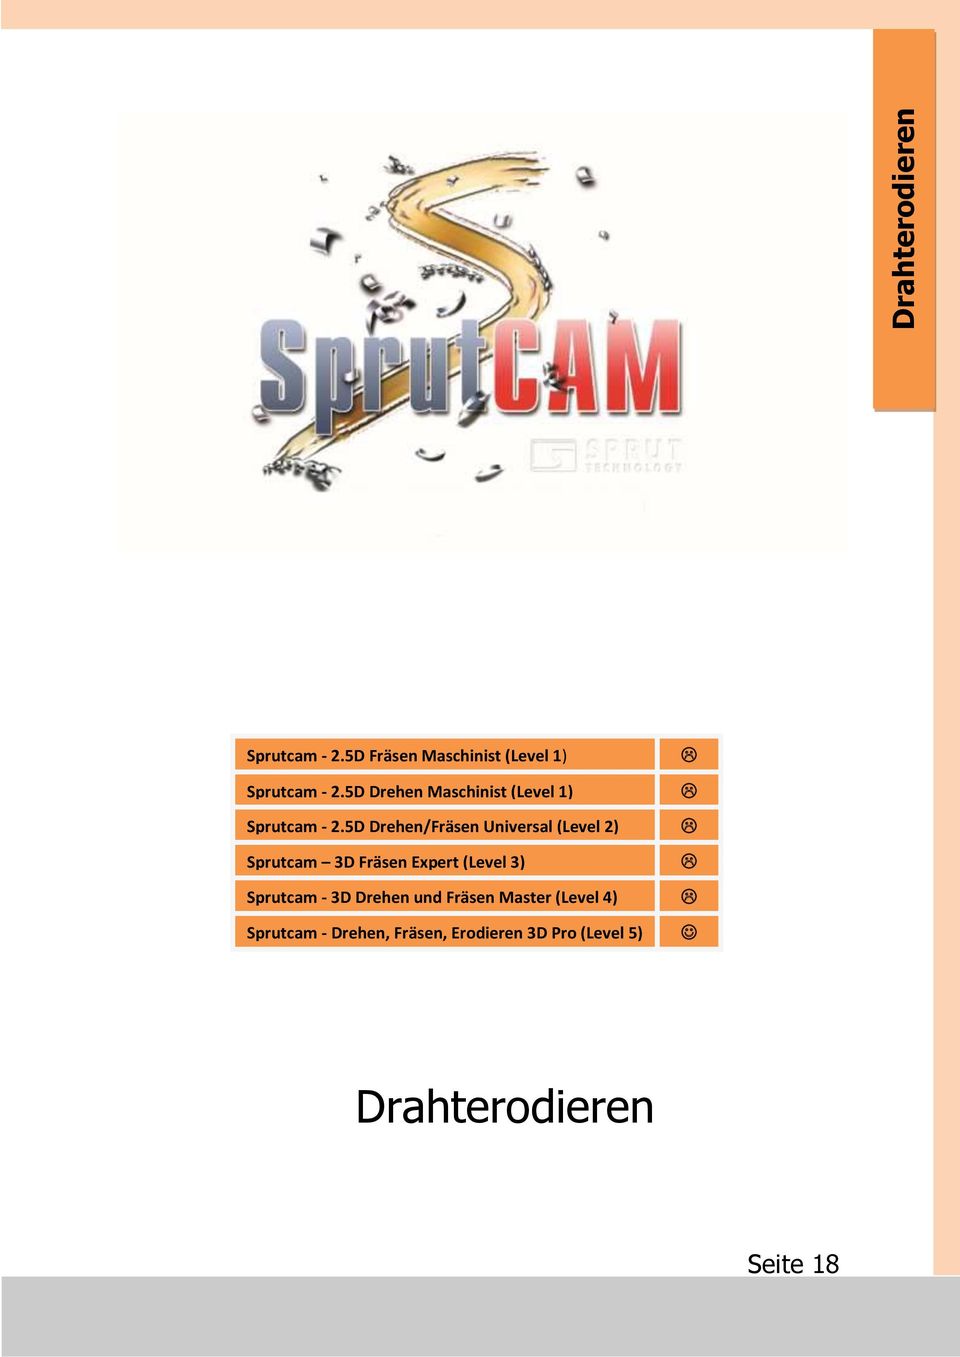 5D Drehen/Fräsen Universal (Level 2) Sprutcam 3D Fräsen Expert (Level 3)